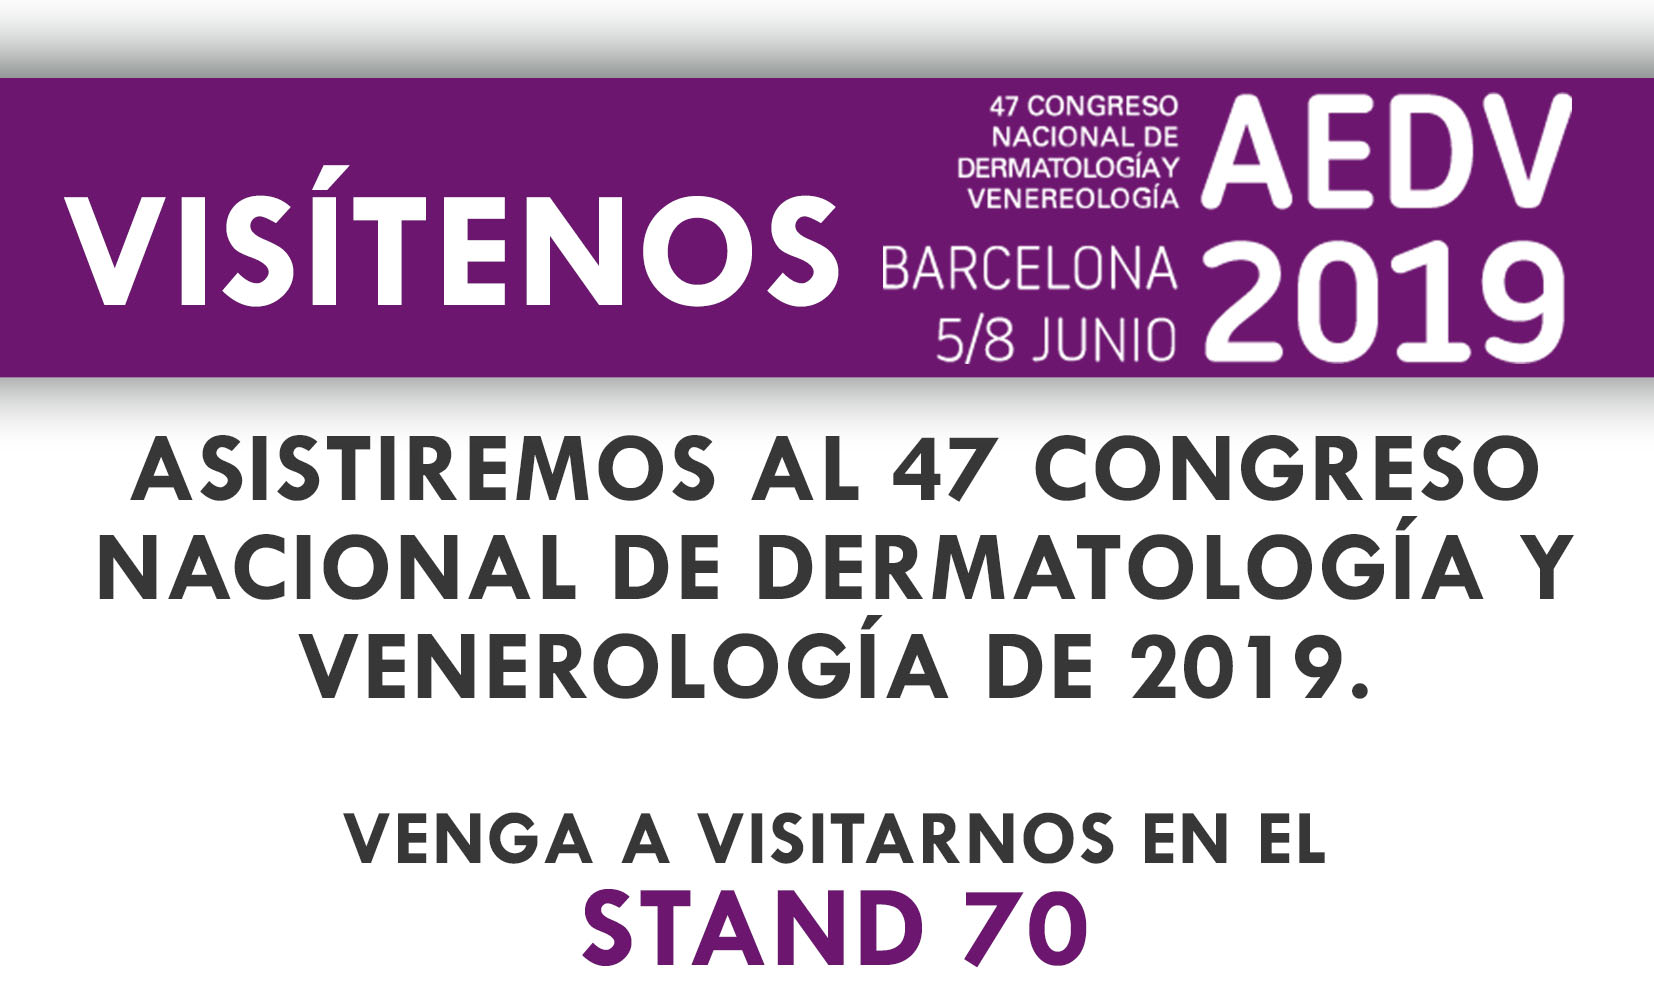 Asistiremos al 47 congreso nacional de dermatología y venerología